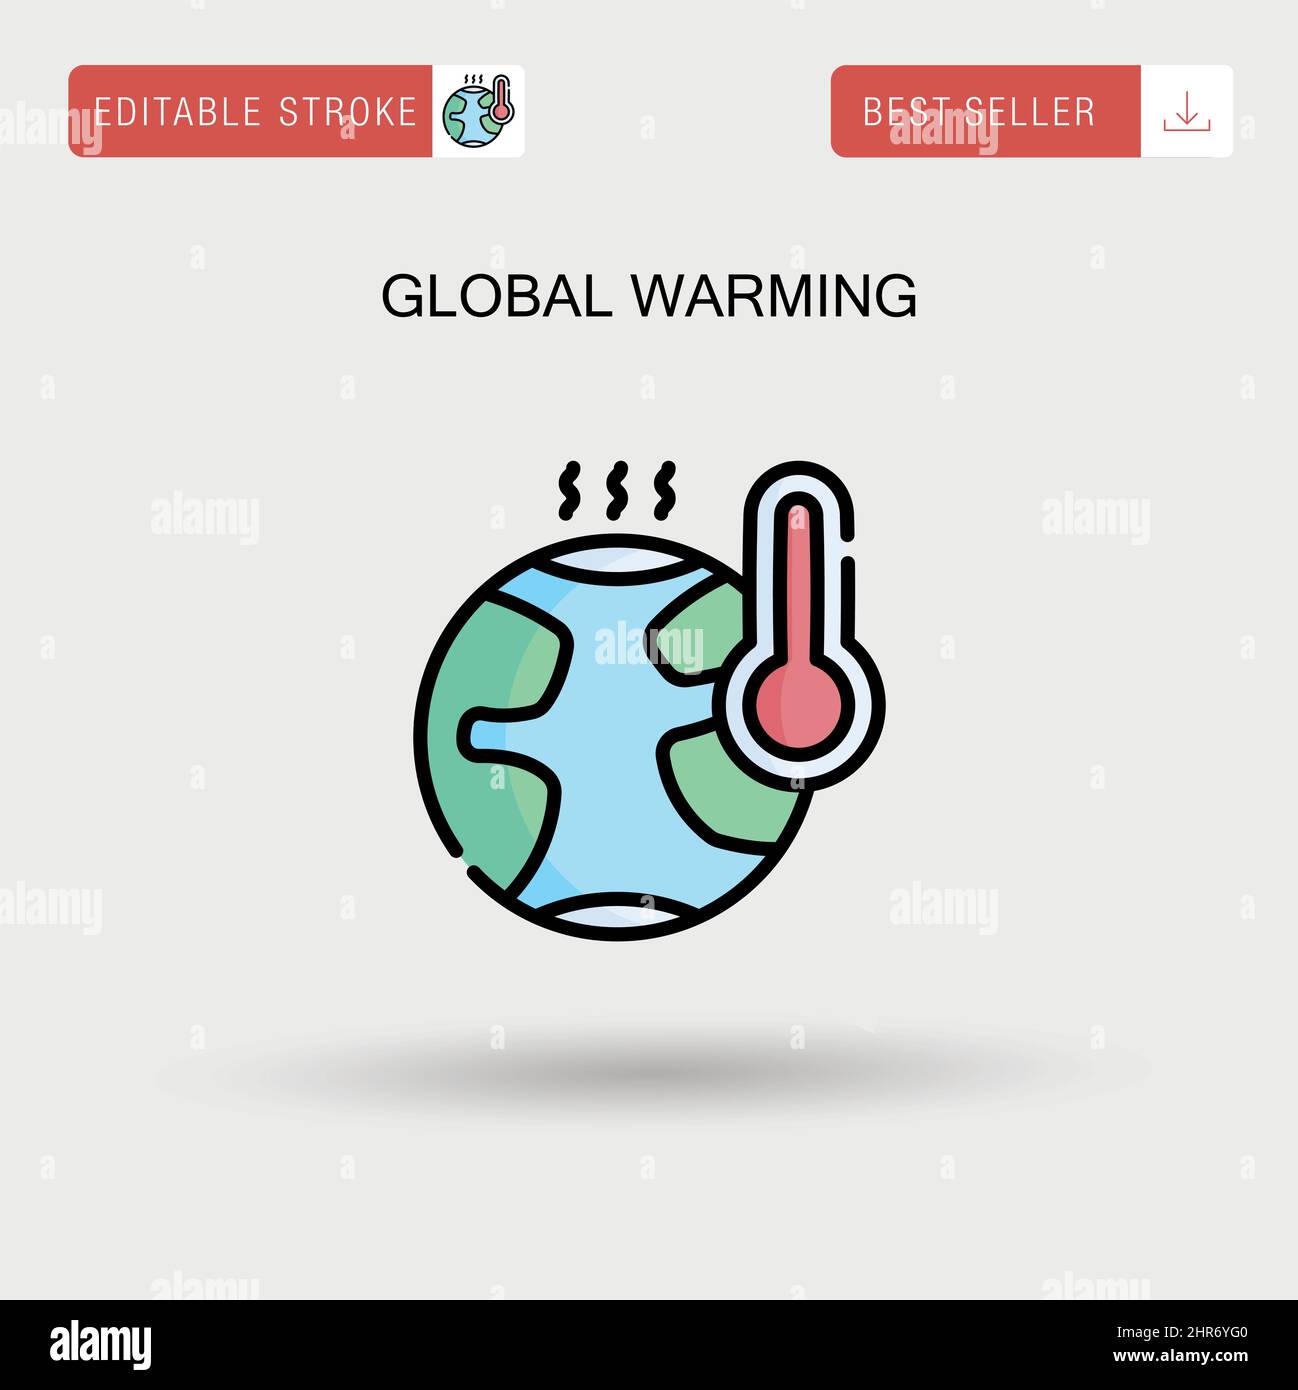 Einfaches Vektorsymbol für die globale Erwärmung. Stock Vektor